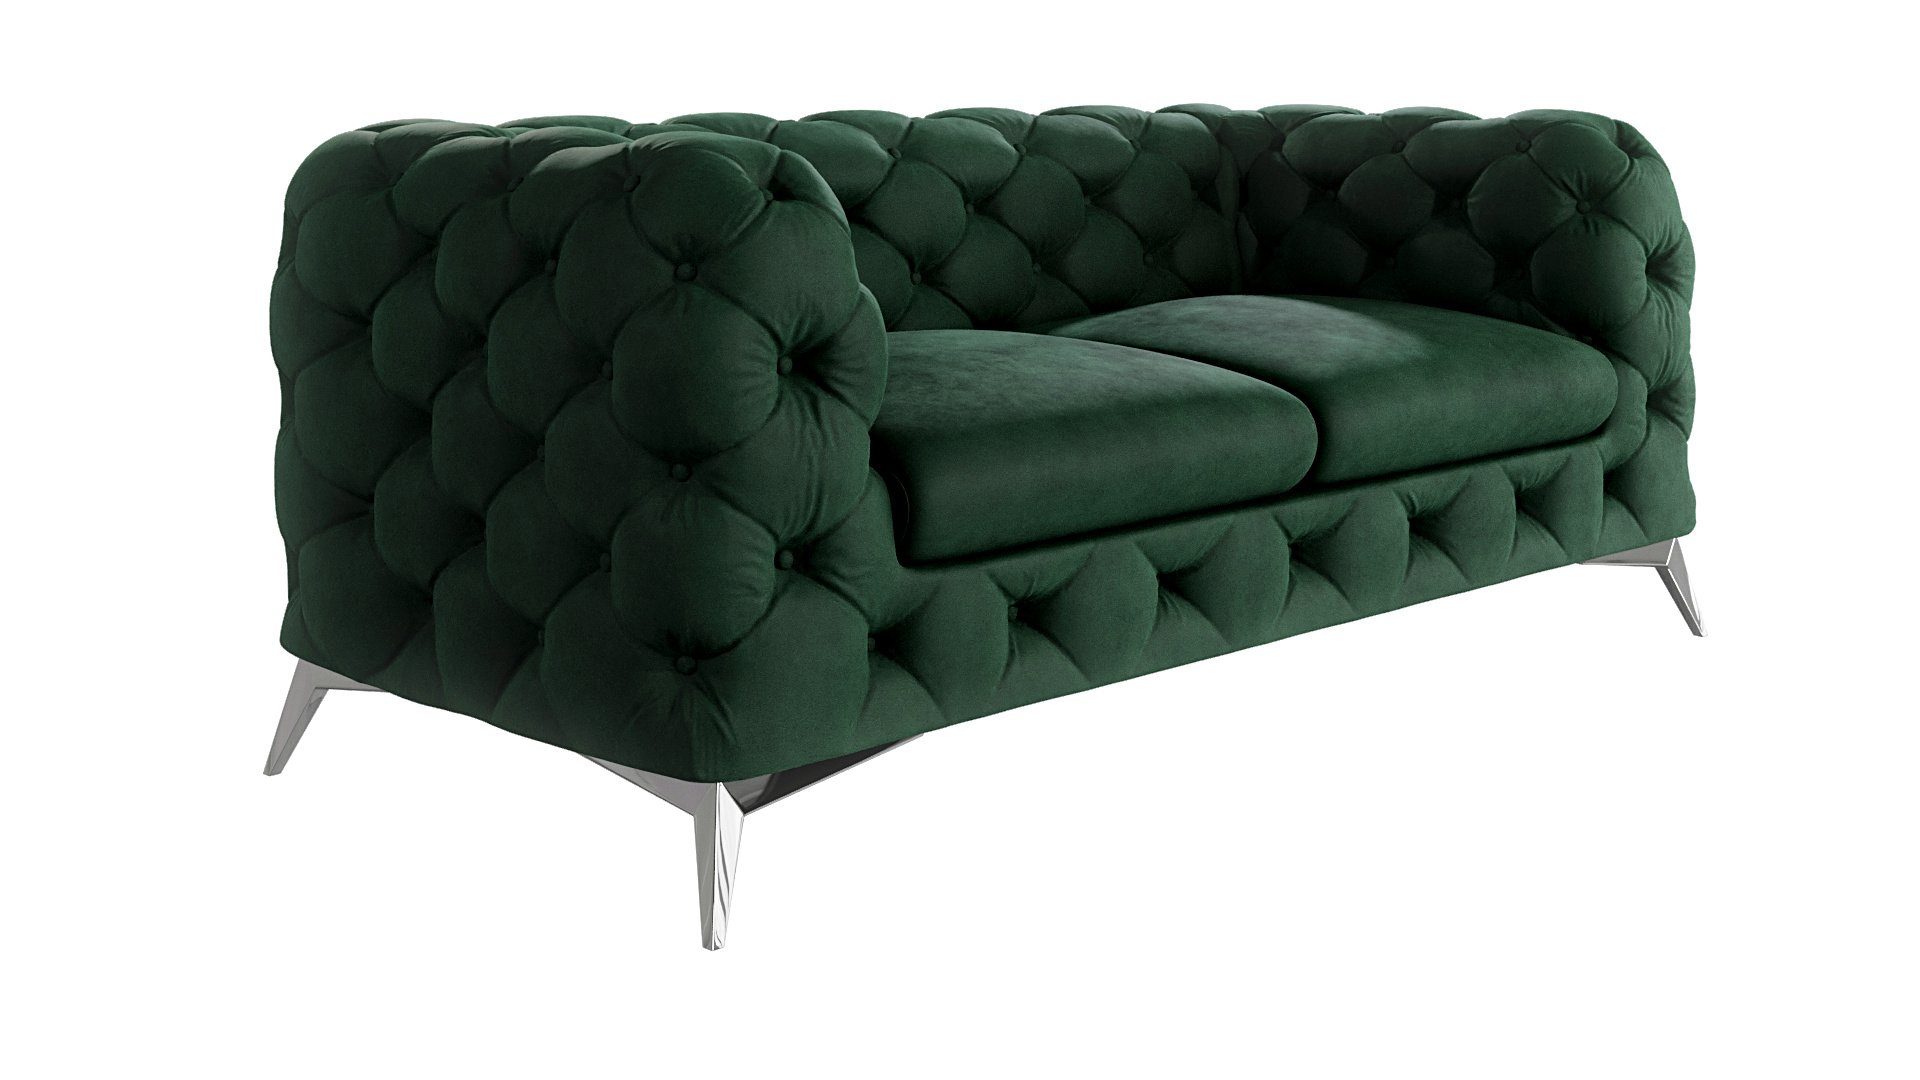 Metall Möbel S-Style Flasche mit Grün Füßen, Silber 2-Sitzer Wellenfederung Kalina mit Chesterfield Sofa